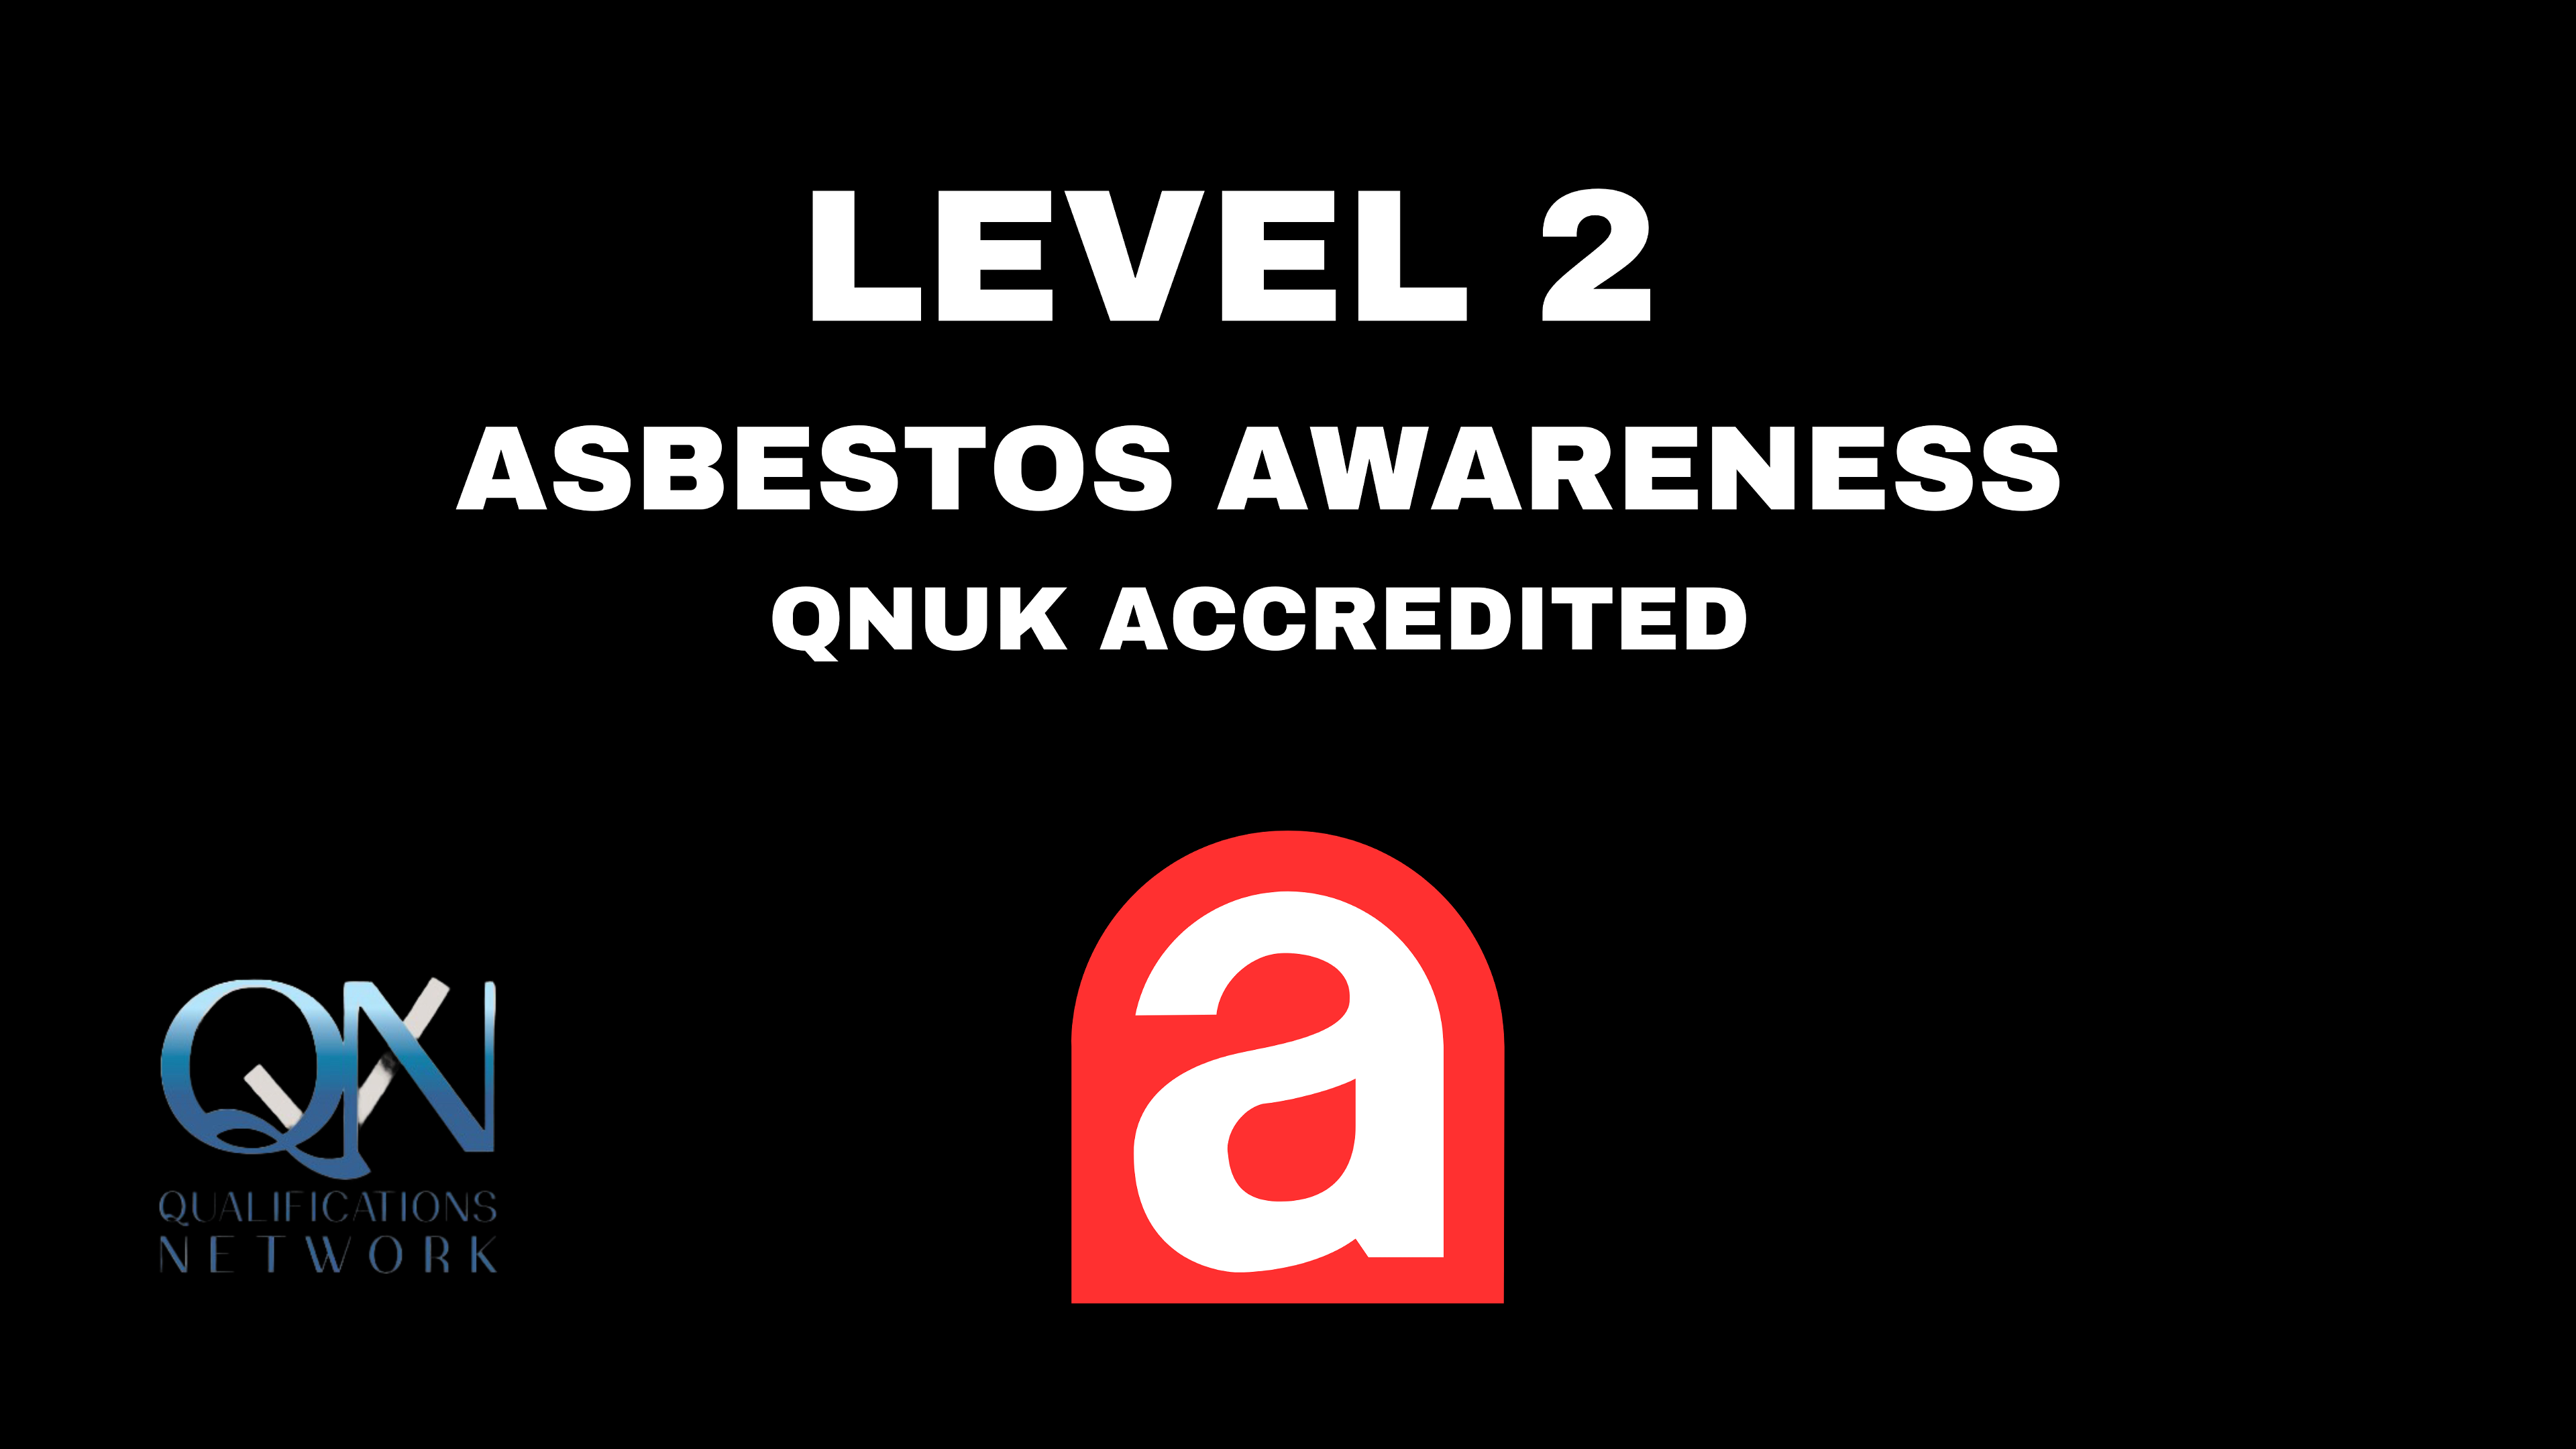 Level 2 Asbestos Awareness